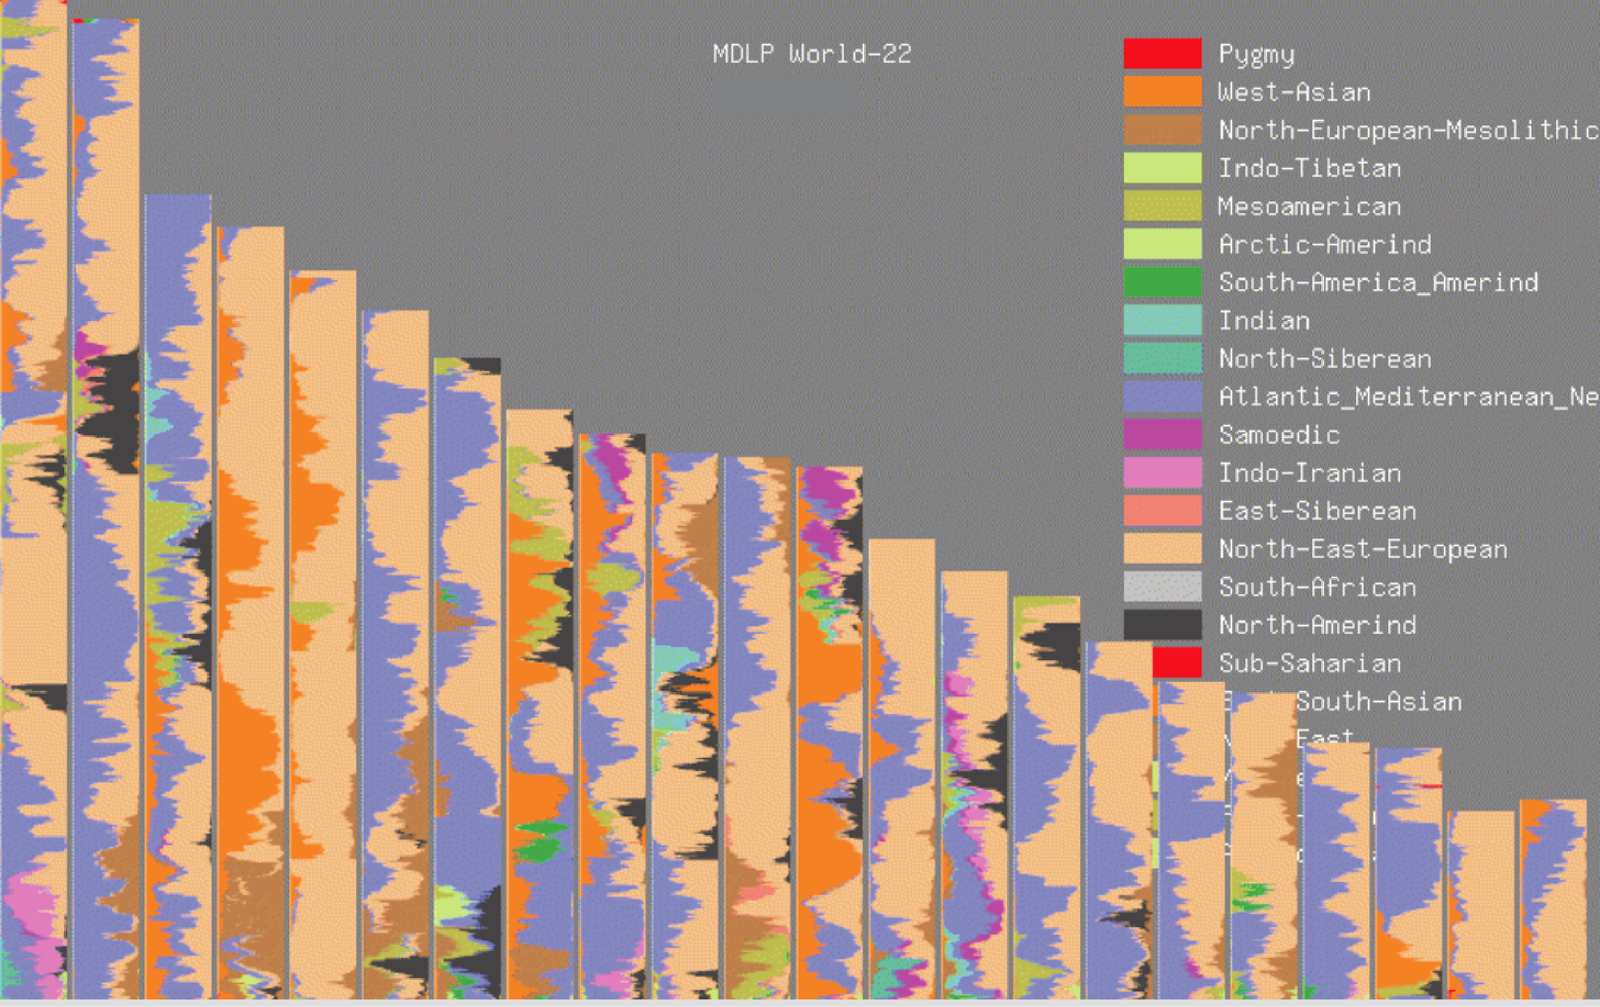 Результаты добавления GEDmatch MDLP World-22 отображаются в виде окраски хромосом.